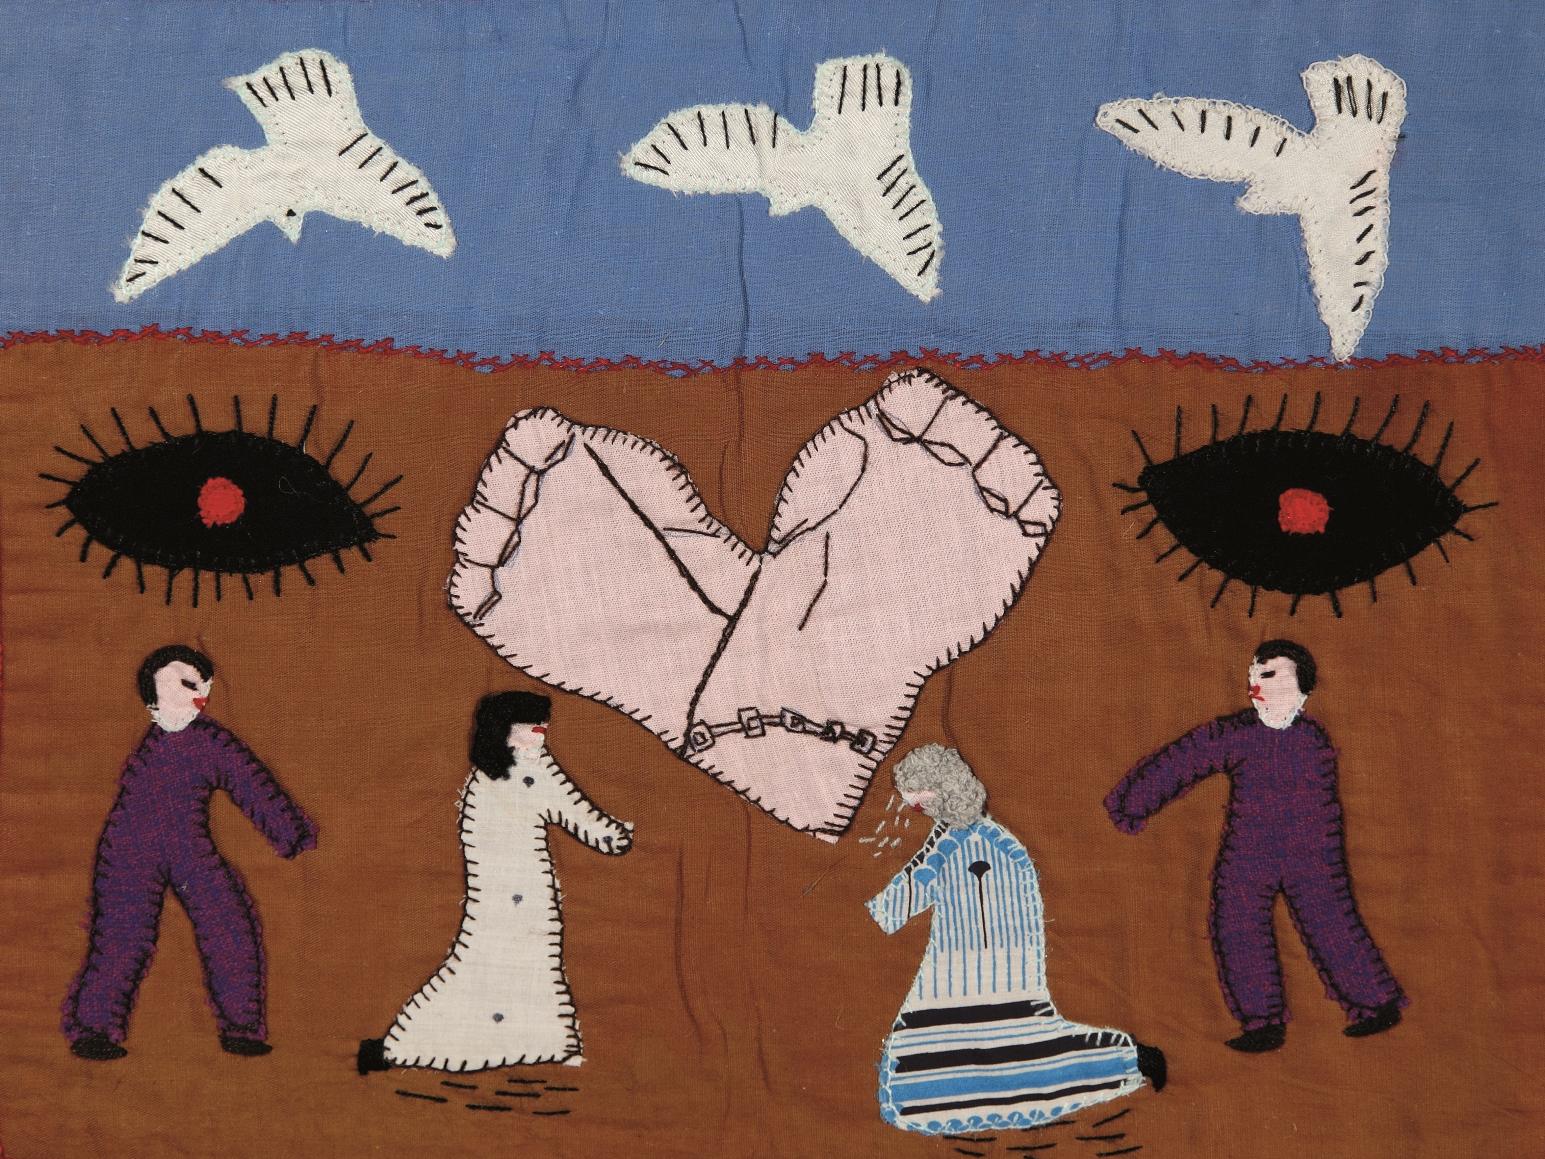 Fotografía de un bordado que representa a cuatro figuras humanas, manos encadenadas, palomas blancas y un par de ojos